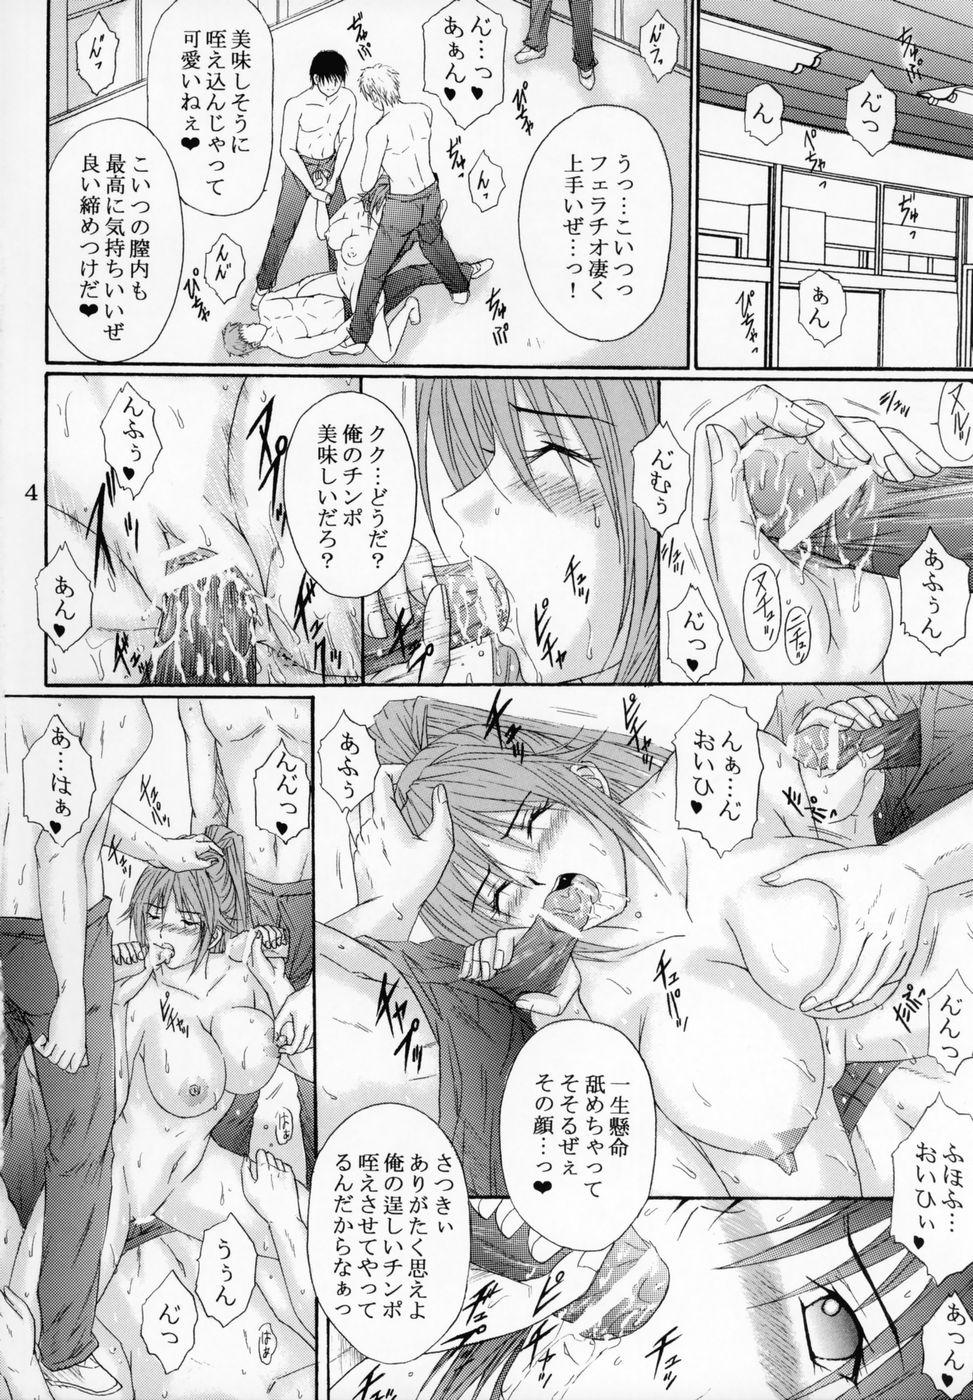 Orgasmus Ryoujoku Rensa 7 - Ichigo 100 Tiny - Page 3